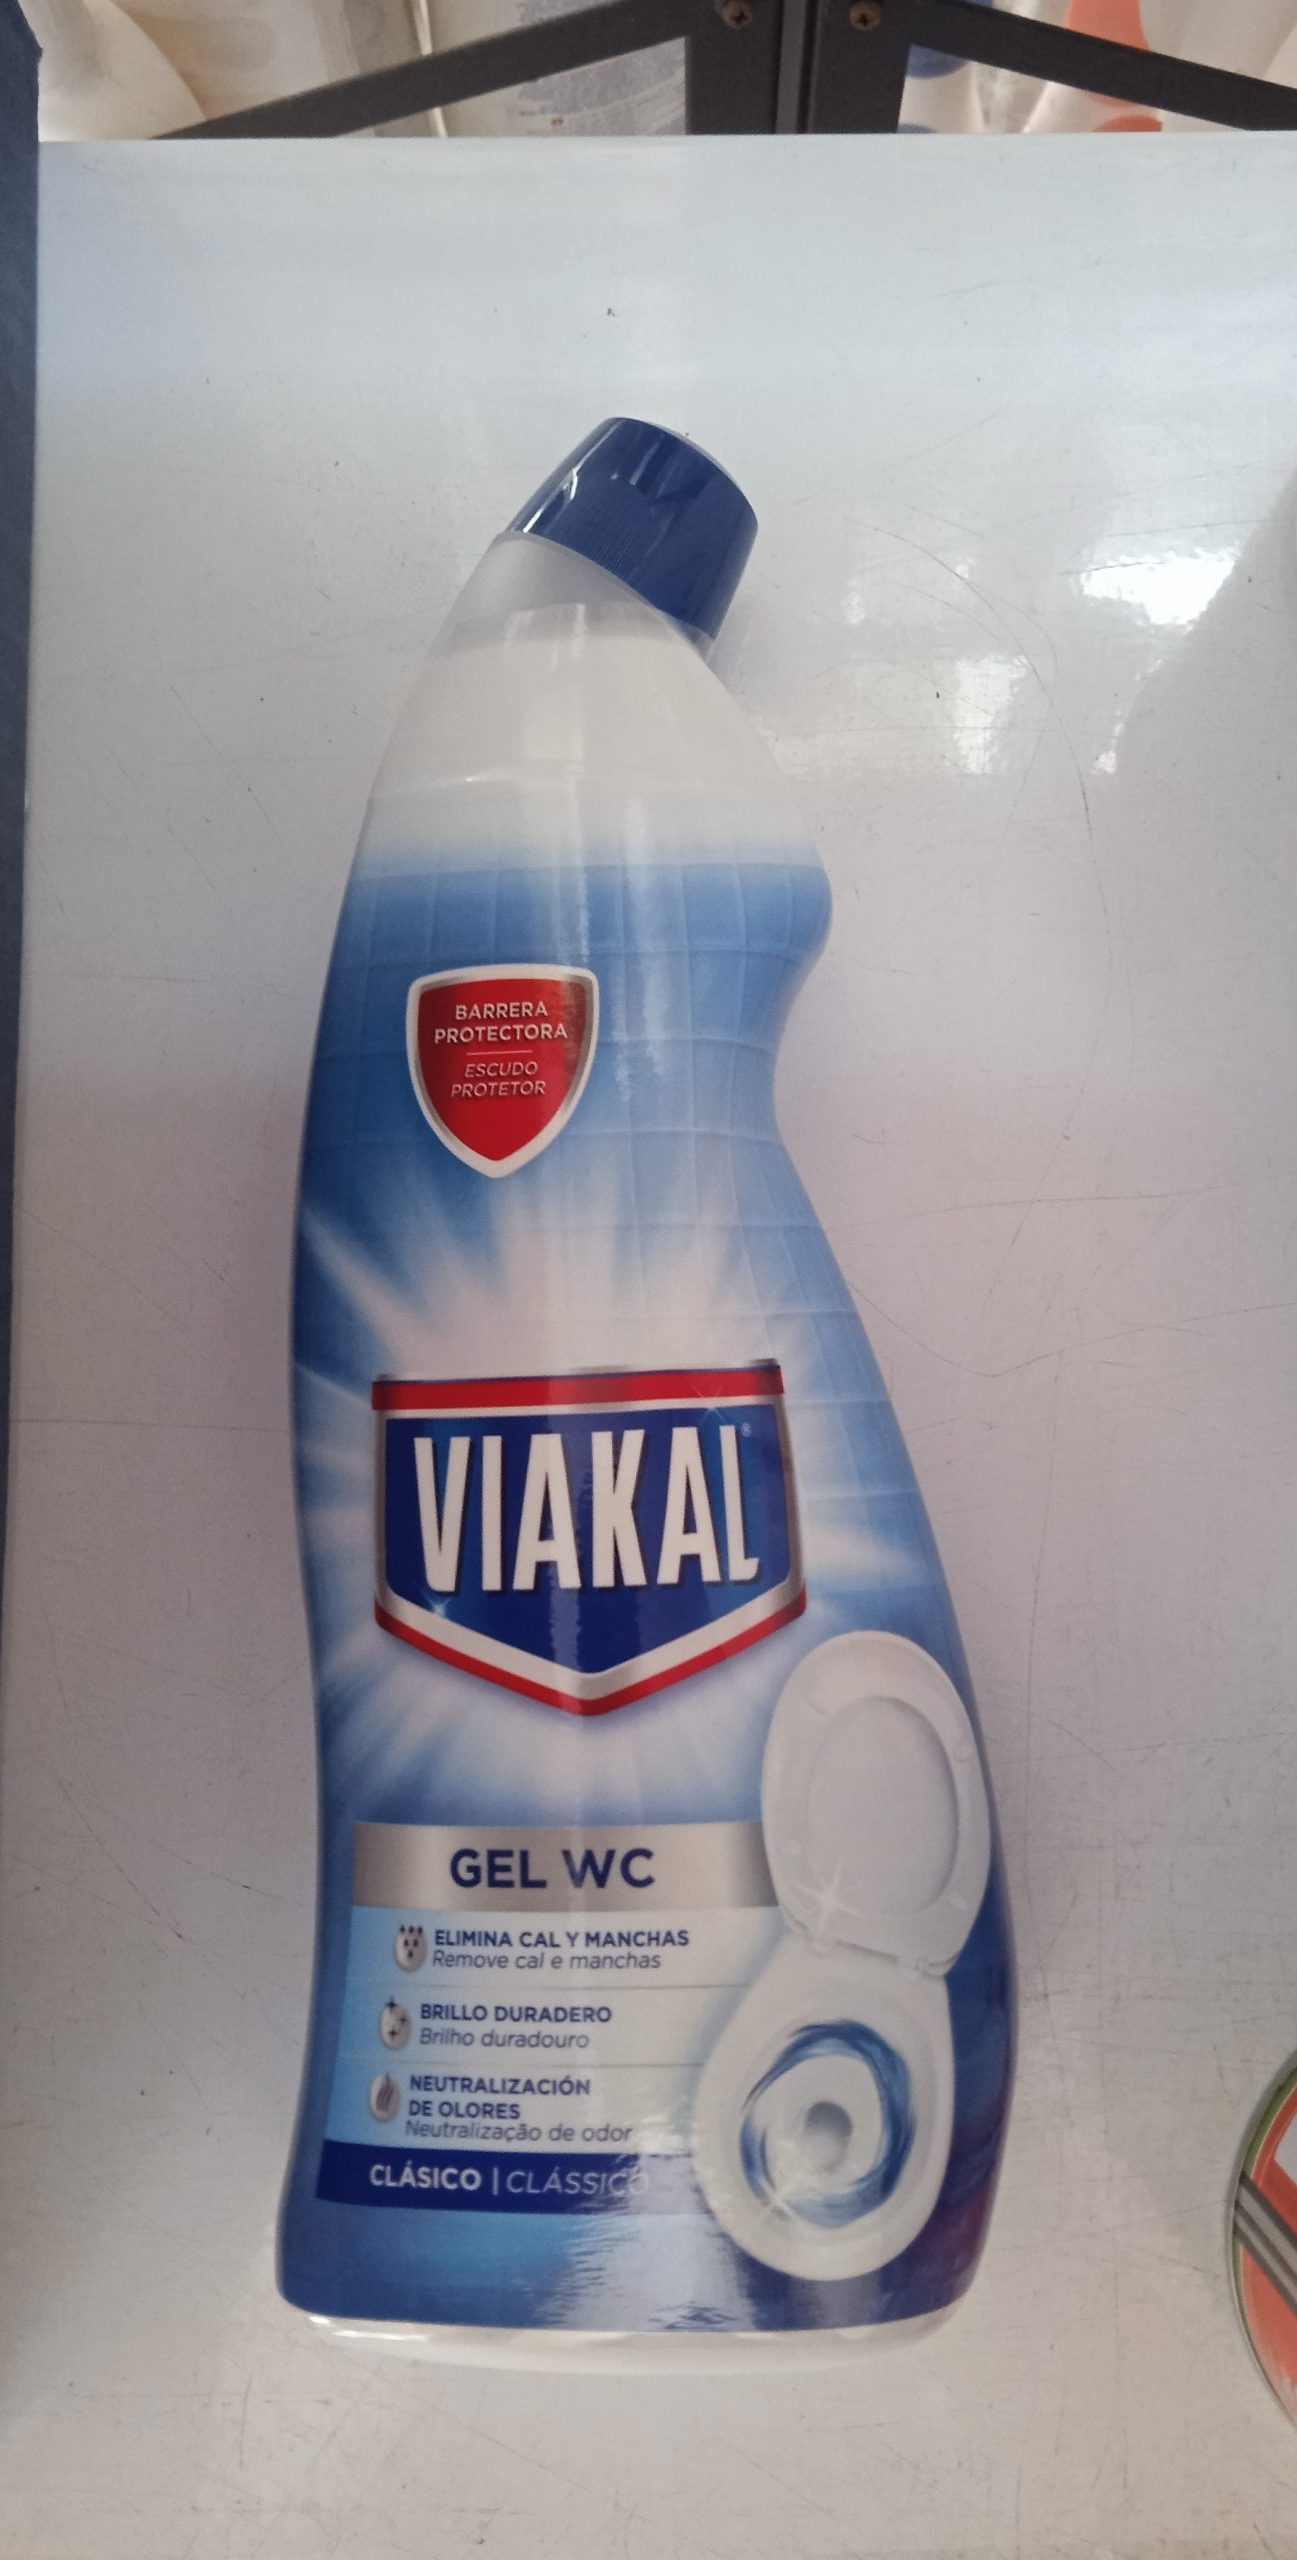 Viakal gel wc